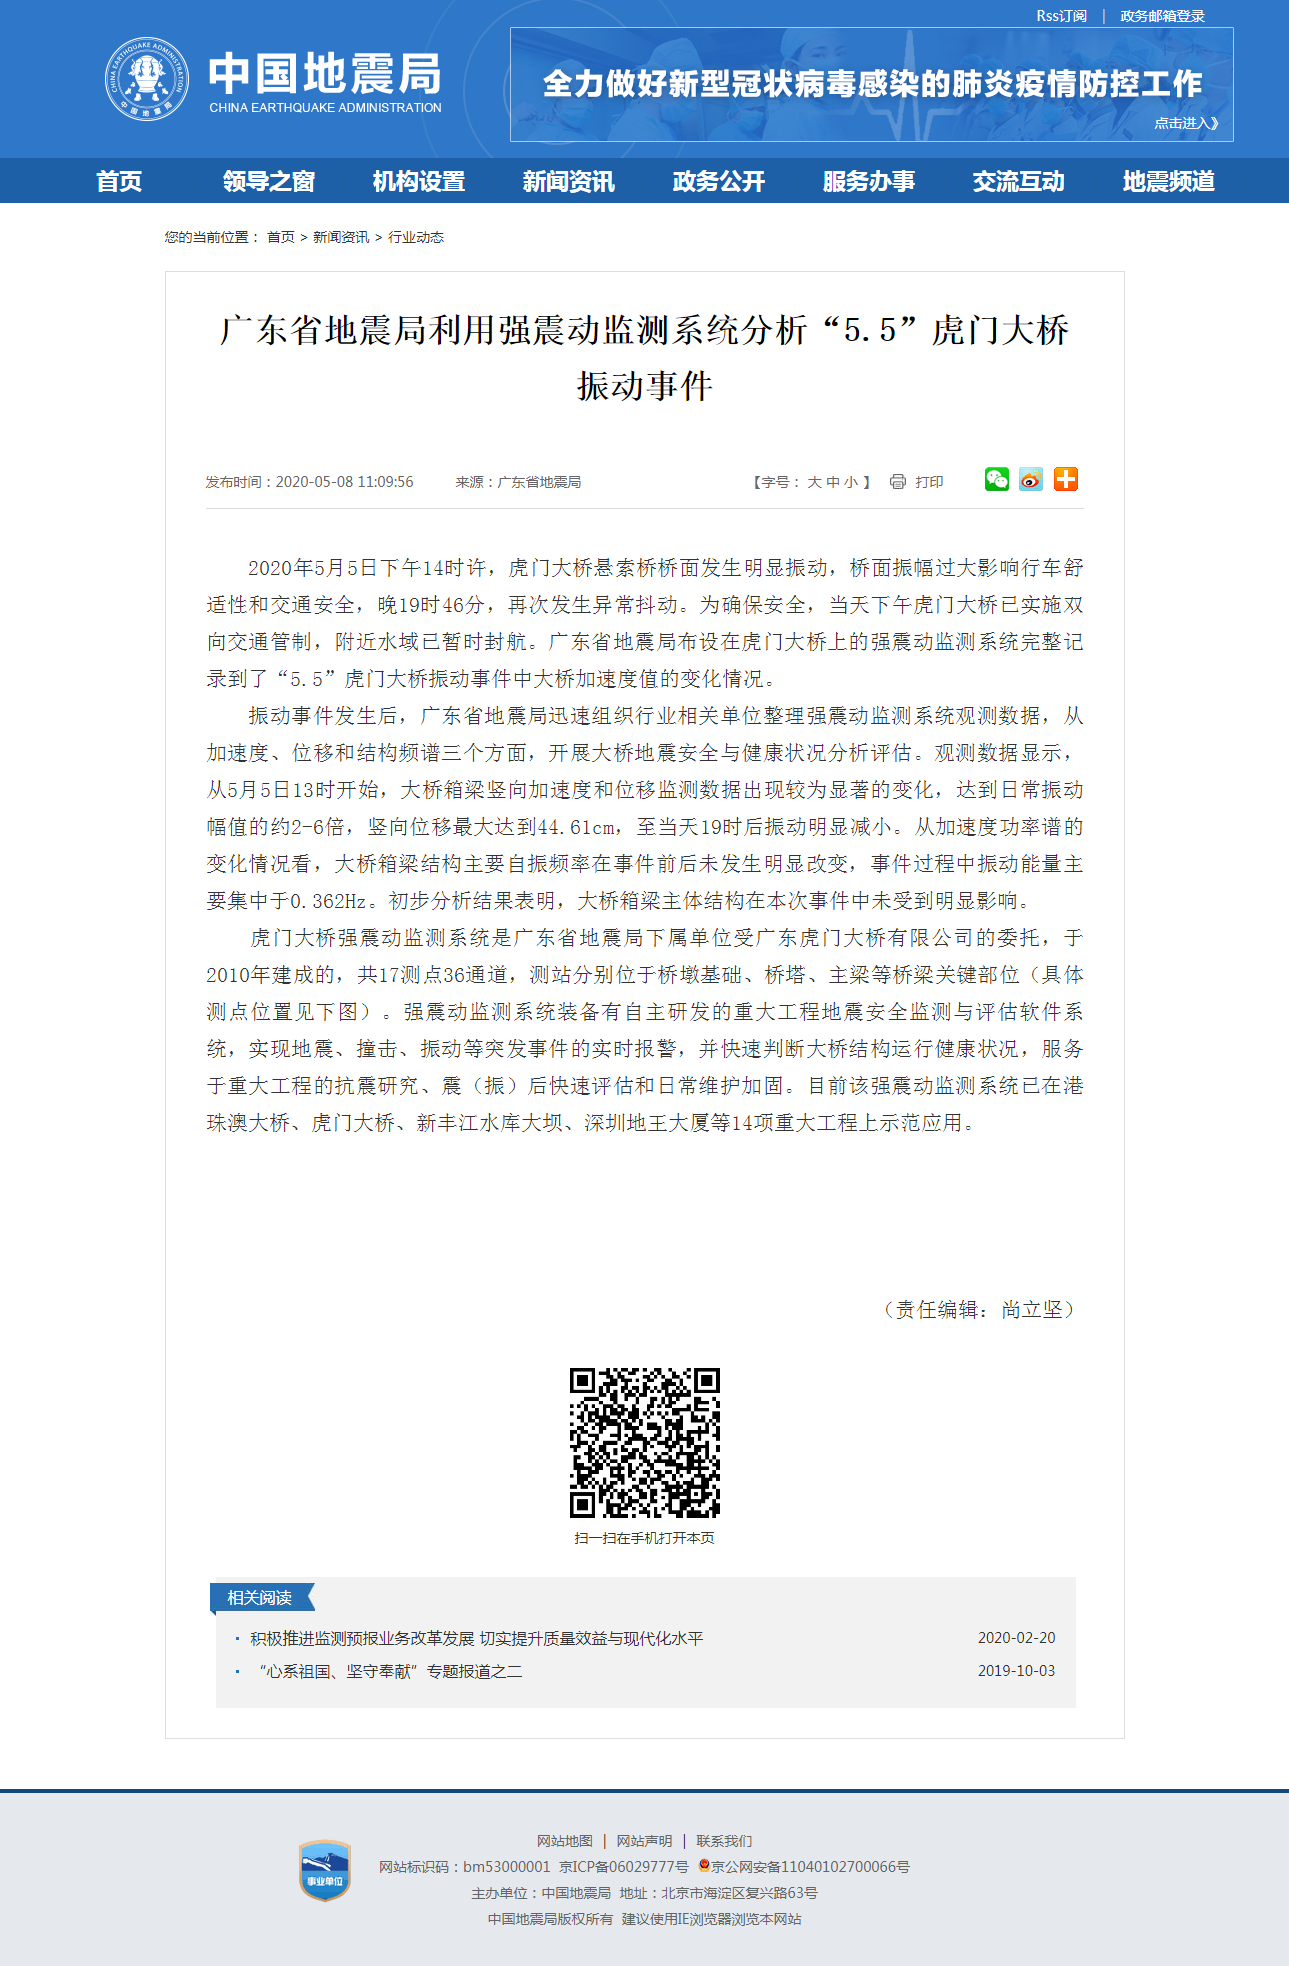 广东省地震局利用强震动监测系统分析“5.5”虎门大桥振动事件.png